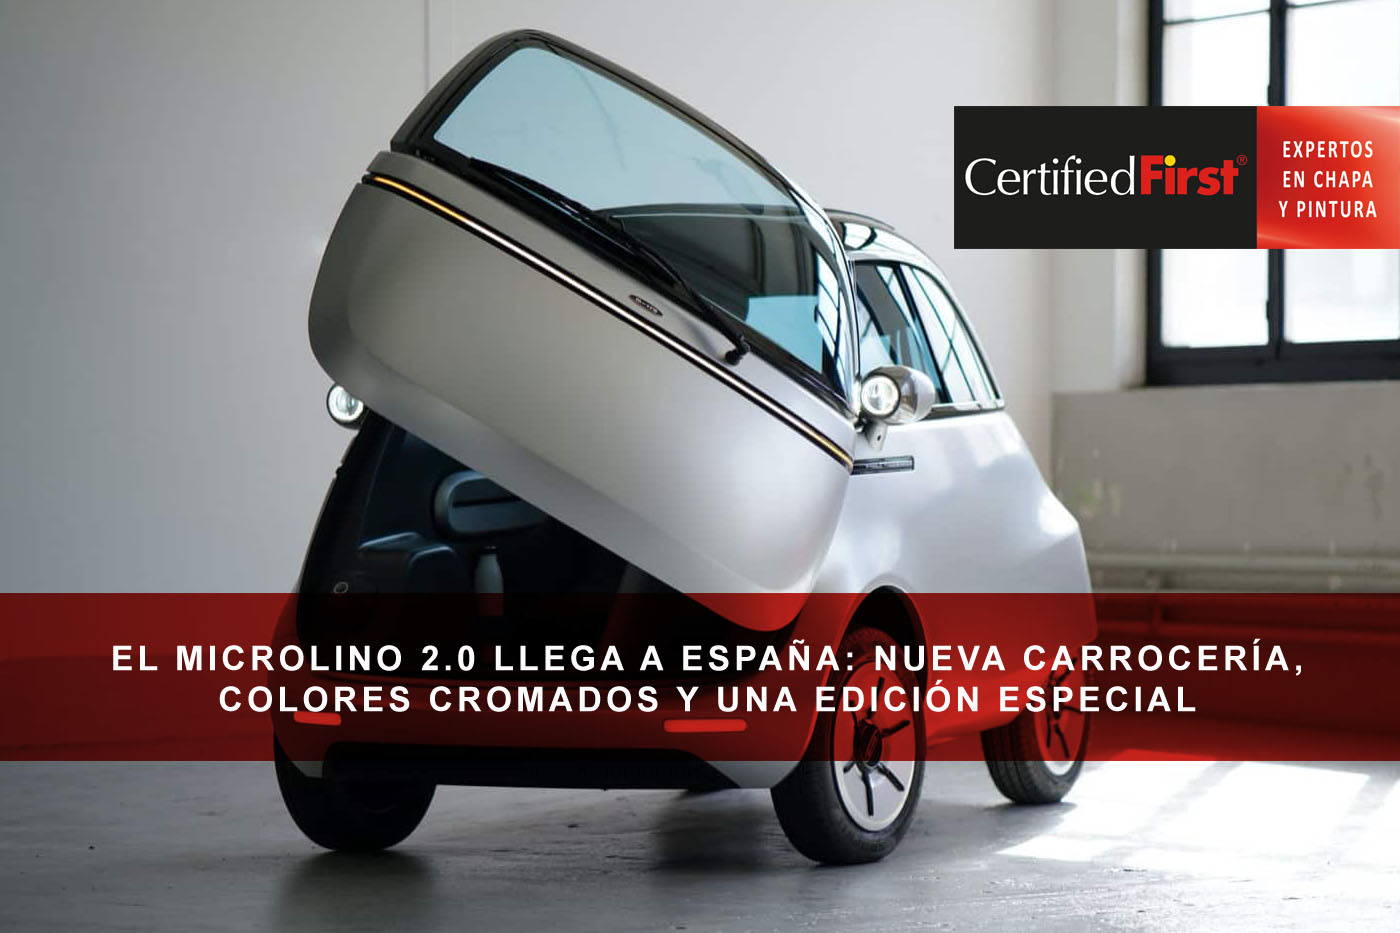 El Microlino 2.0 llega a España: nueva carrocería, colores cromados y una edición especial